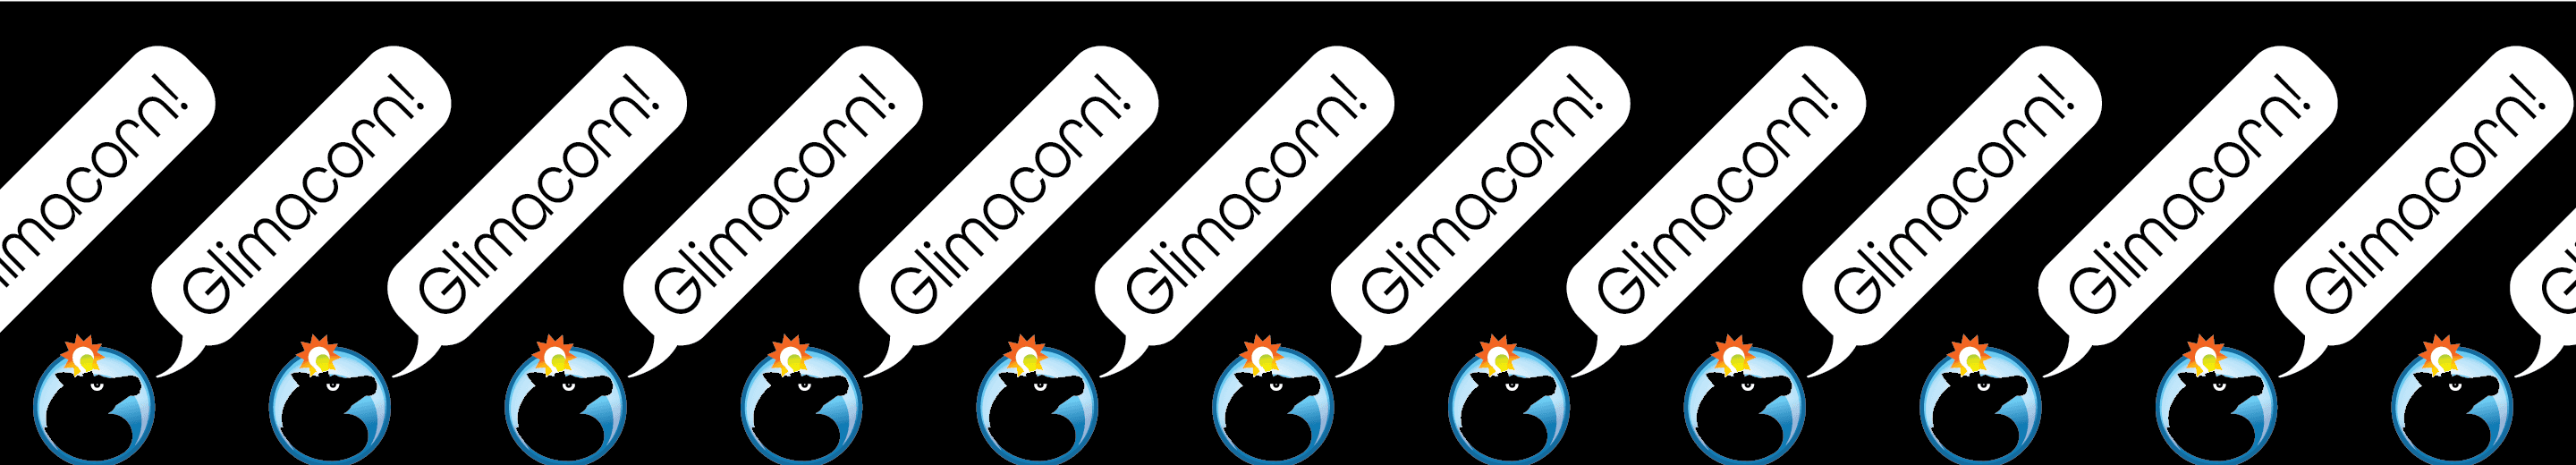 Glimacorn banner